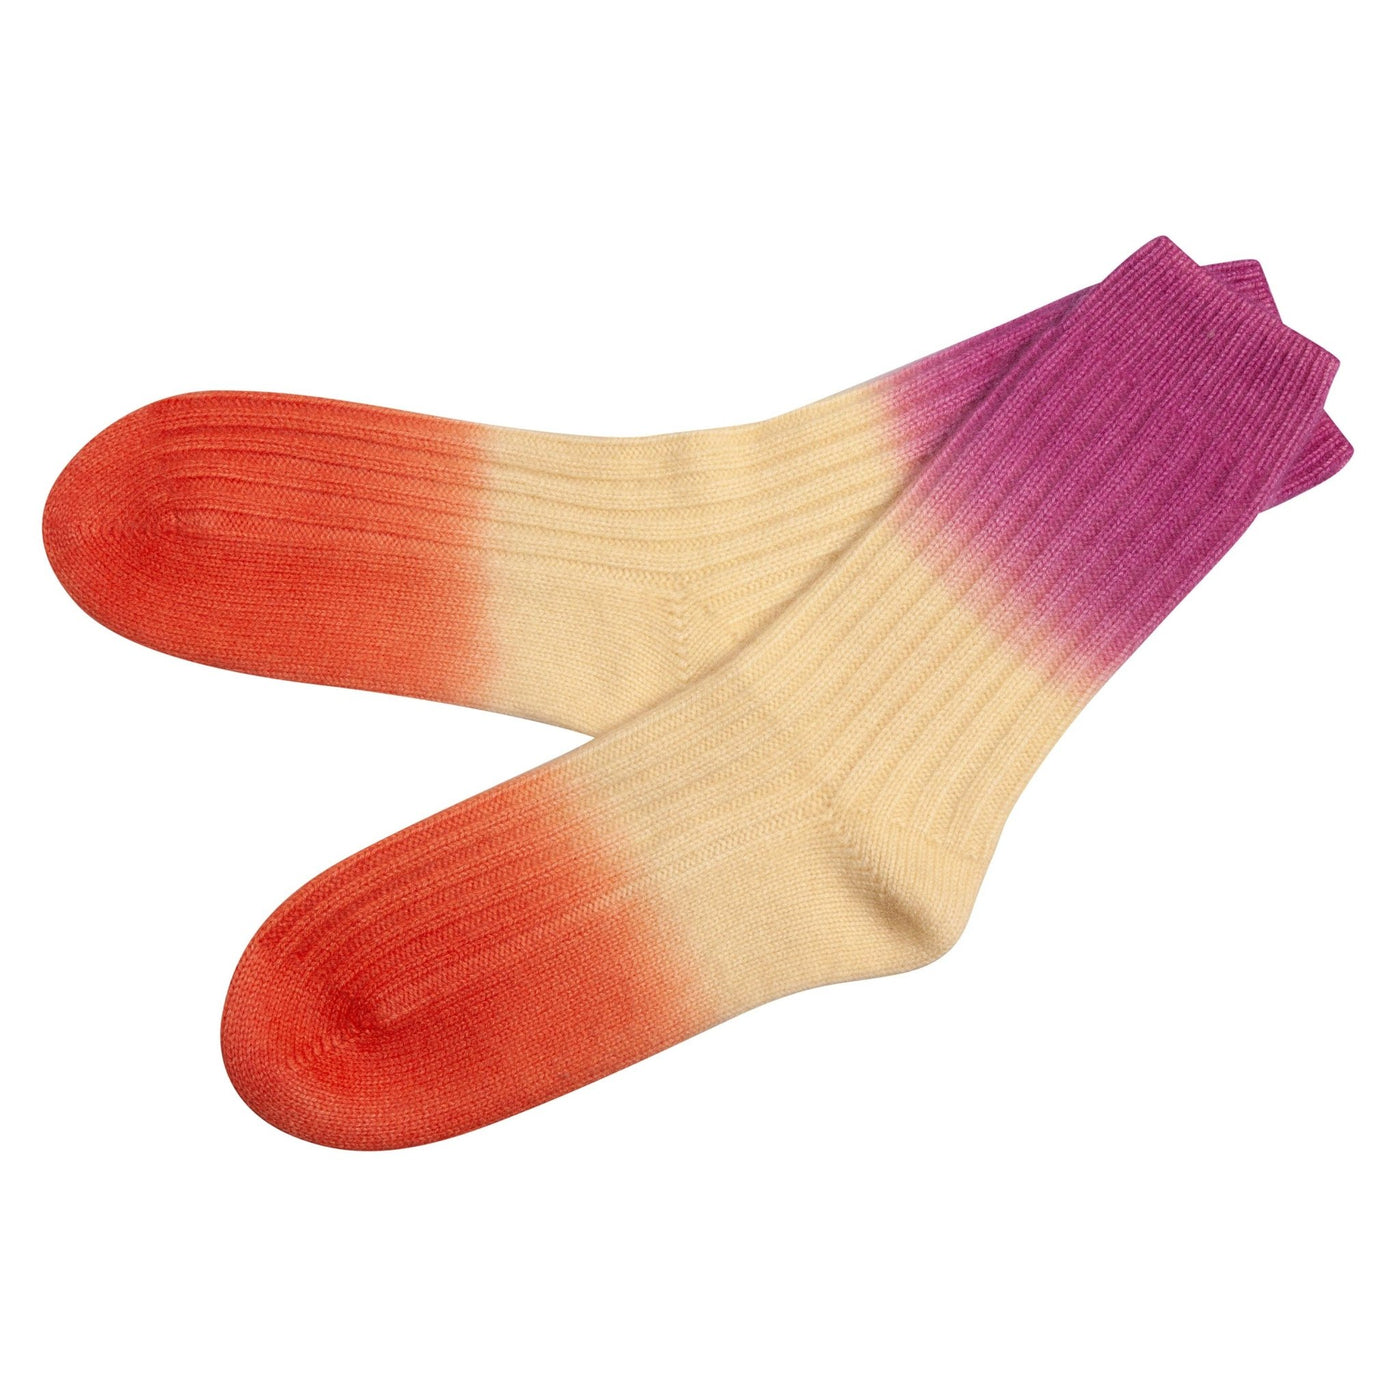 Cute Stuff reine Kaschmir Socken mit Farbverlauf in Flamingo Größe 35-38 & 39-42 - Bitangel RENOVATE & FURNISH HOMES GmbH